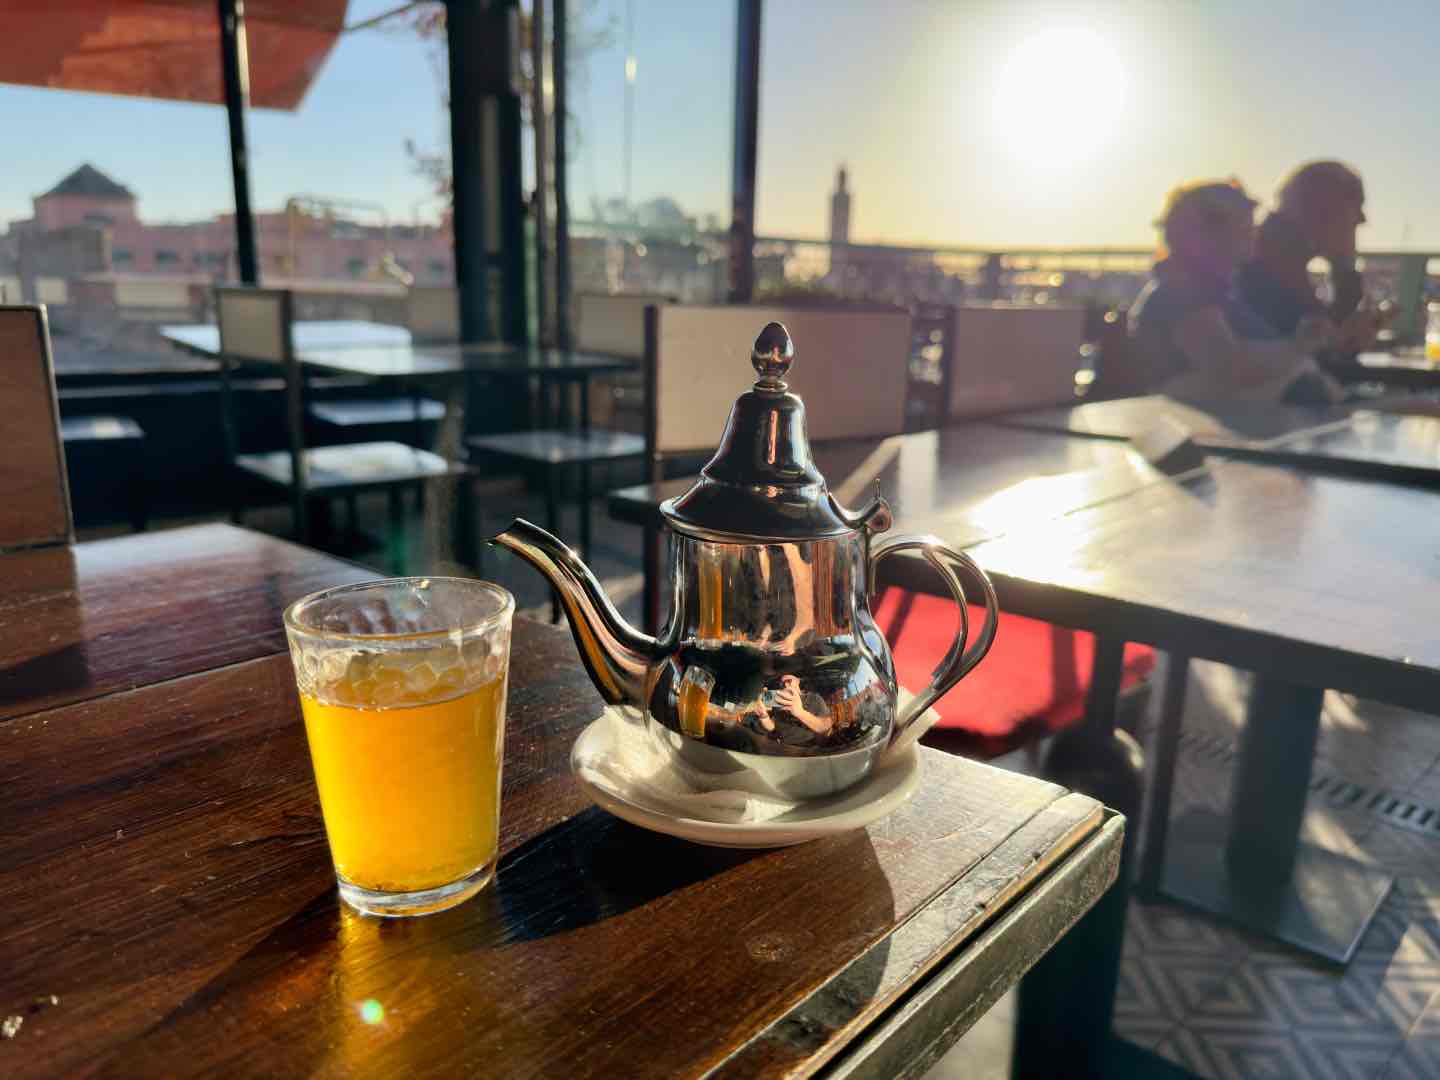 Moroccan Tea at Aqua Cafe, Marrakech